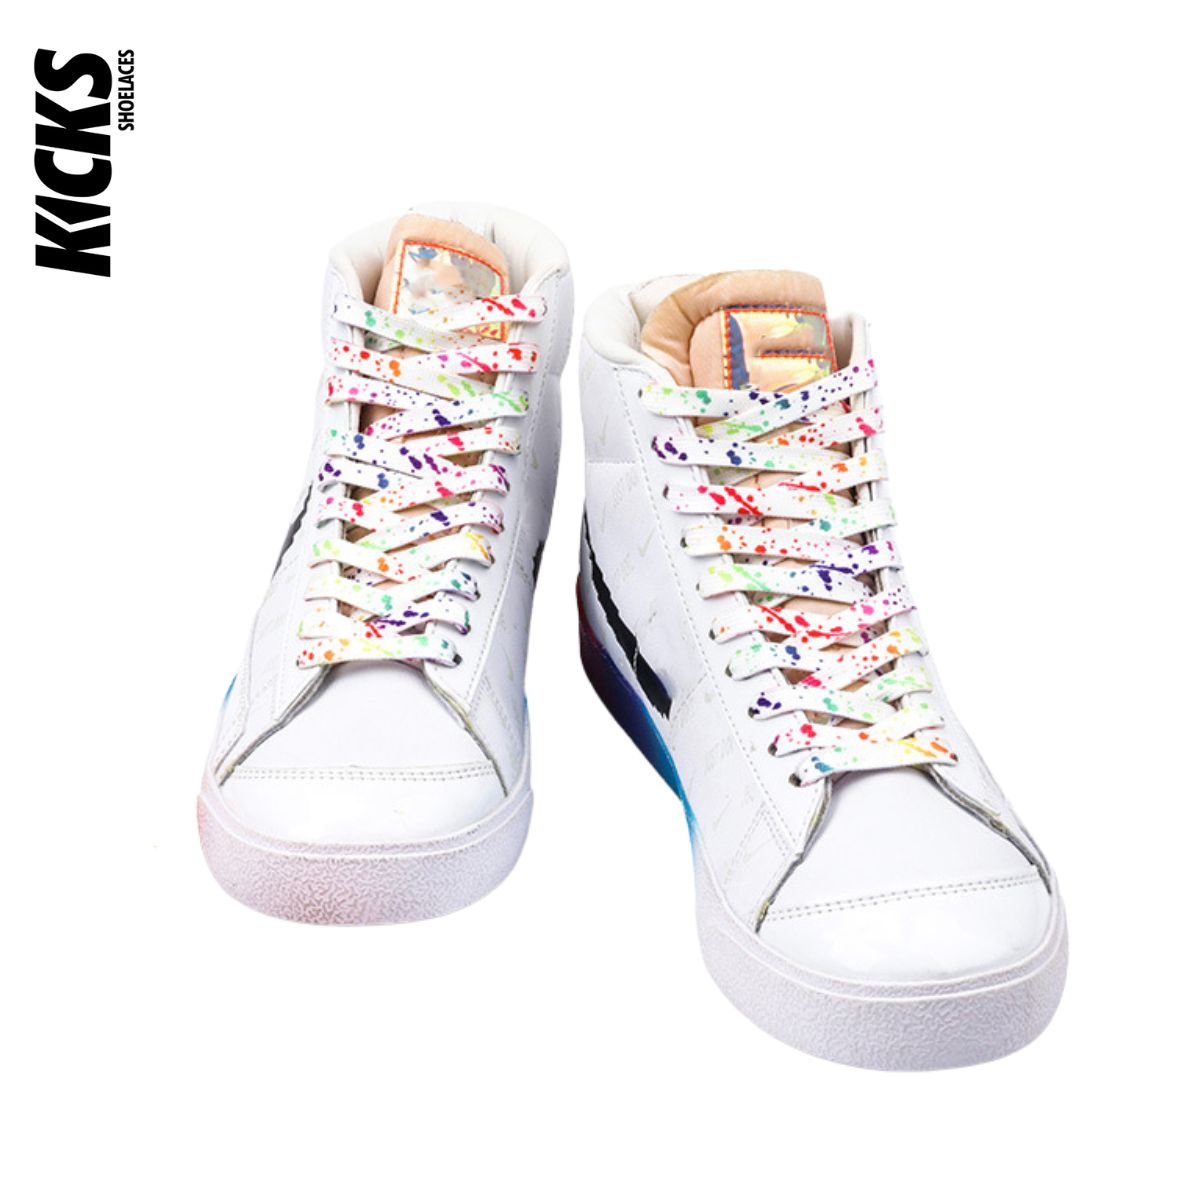 Paint Splatter Shoelaces - Kicks Shoelaces